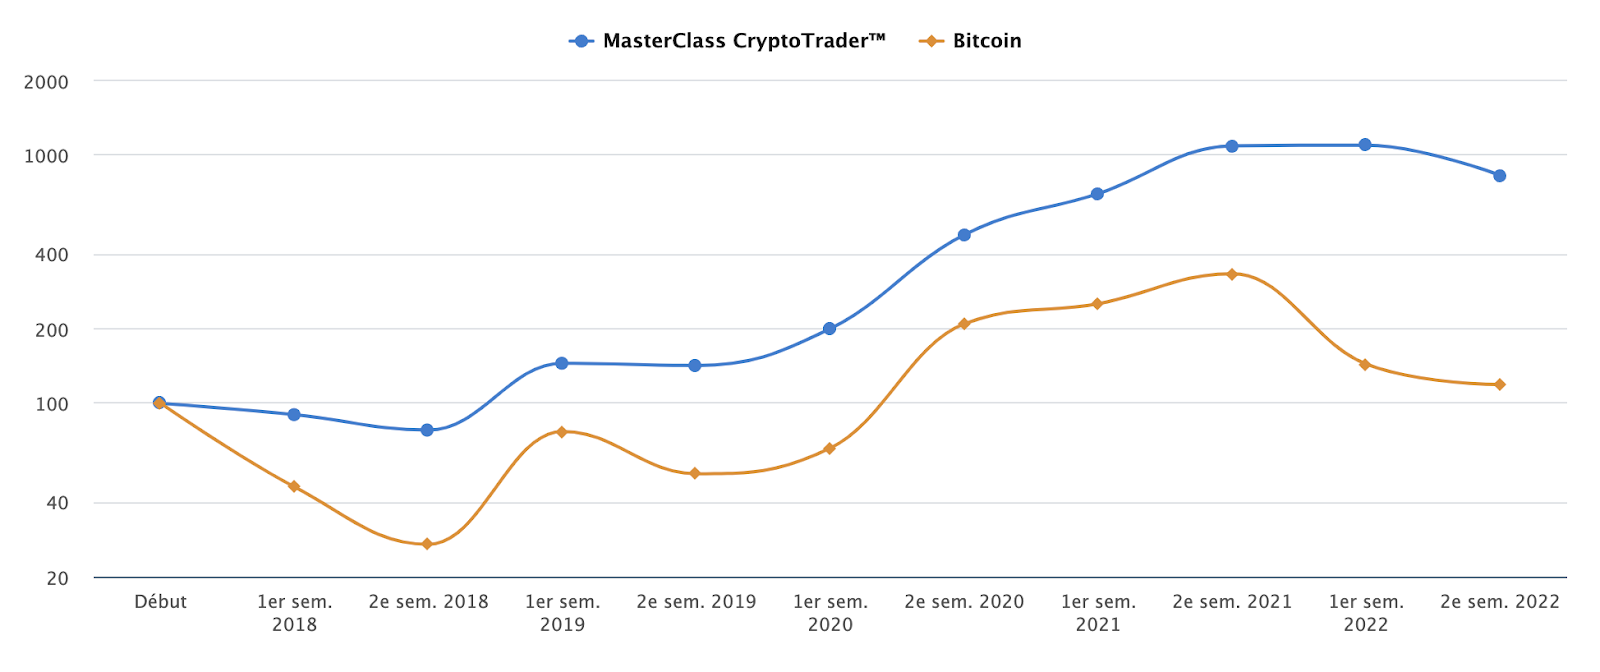 La Masterclass Cryptotrader a su générer des bénéfices réguliers pour les traders ayant suivi la formation pour comprendre le cours du Bitcoin et des cryptomonnaies